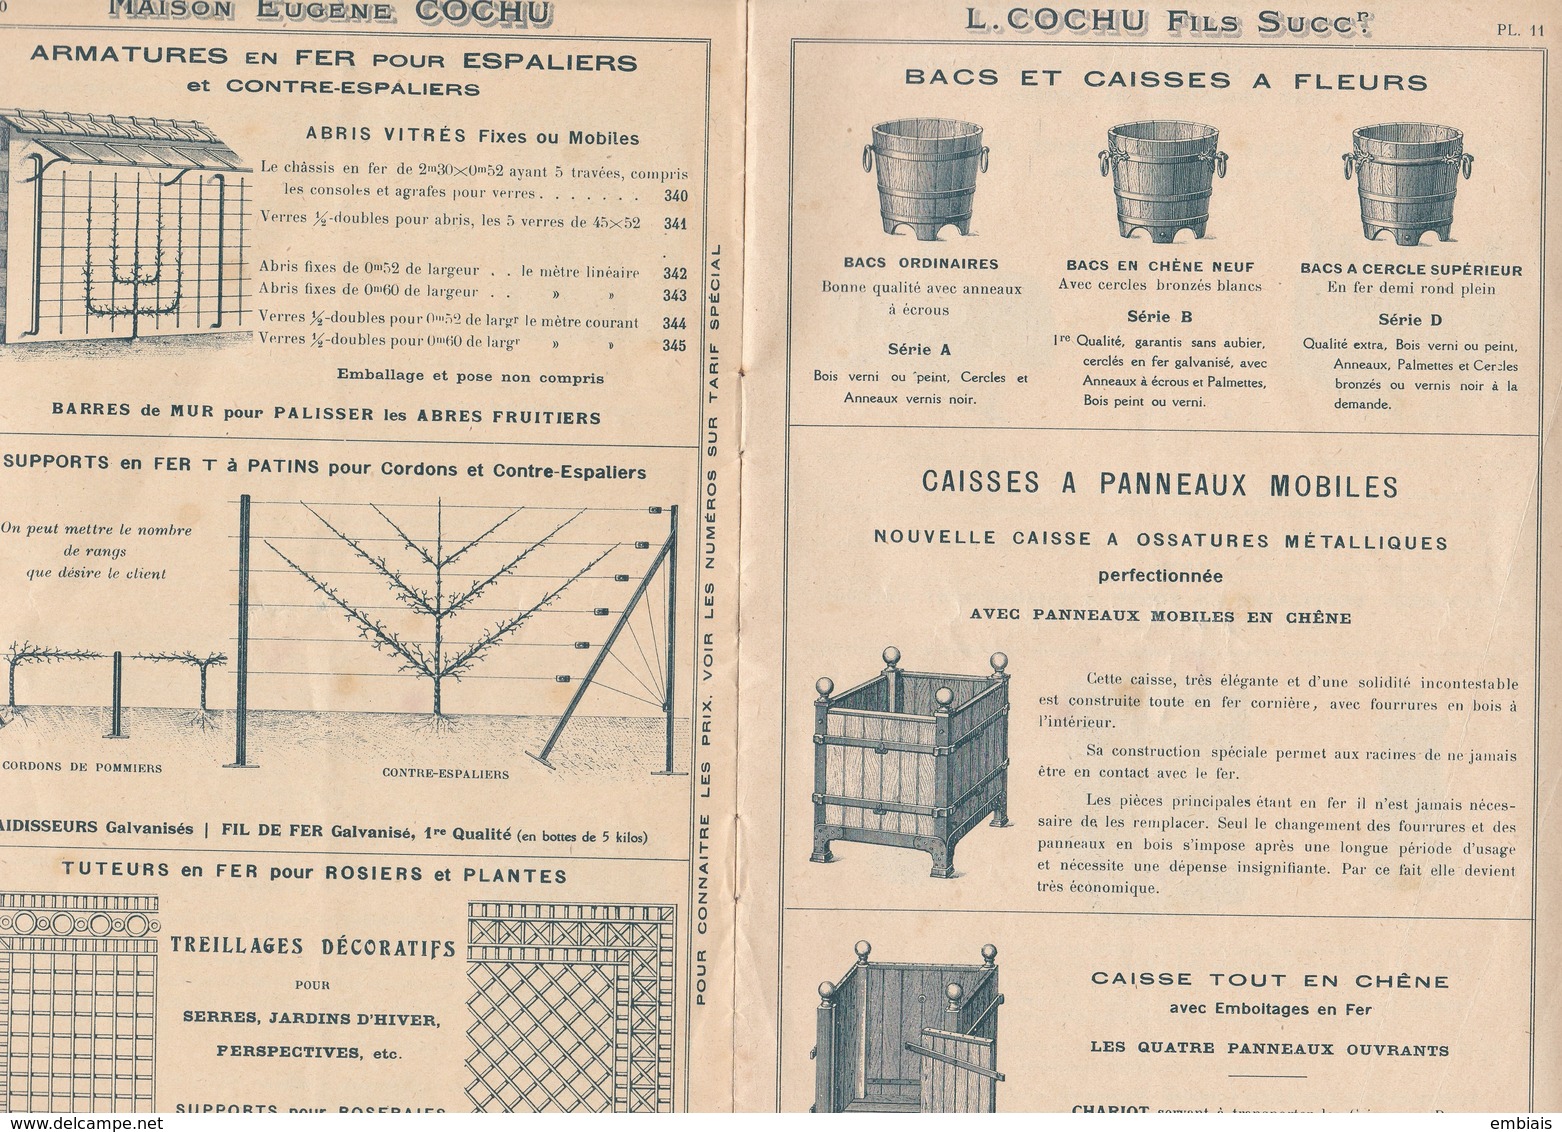 93 Saint-Denis - Maison Eugène COCHU, L.COCHU Fils Succr.Catalogue Constructions Horticoles Serres Chauffages - Publicités